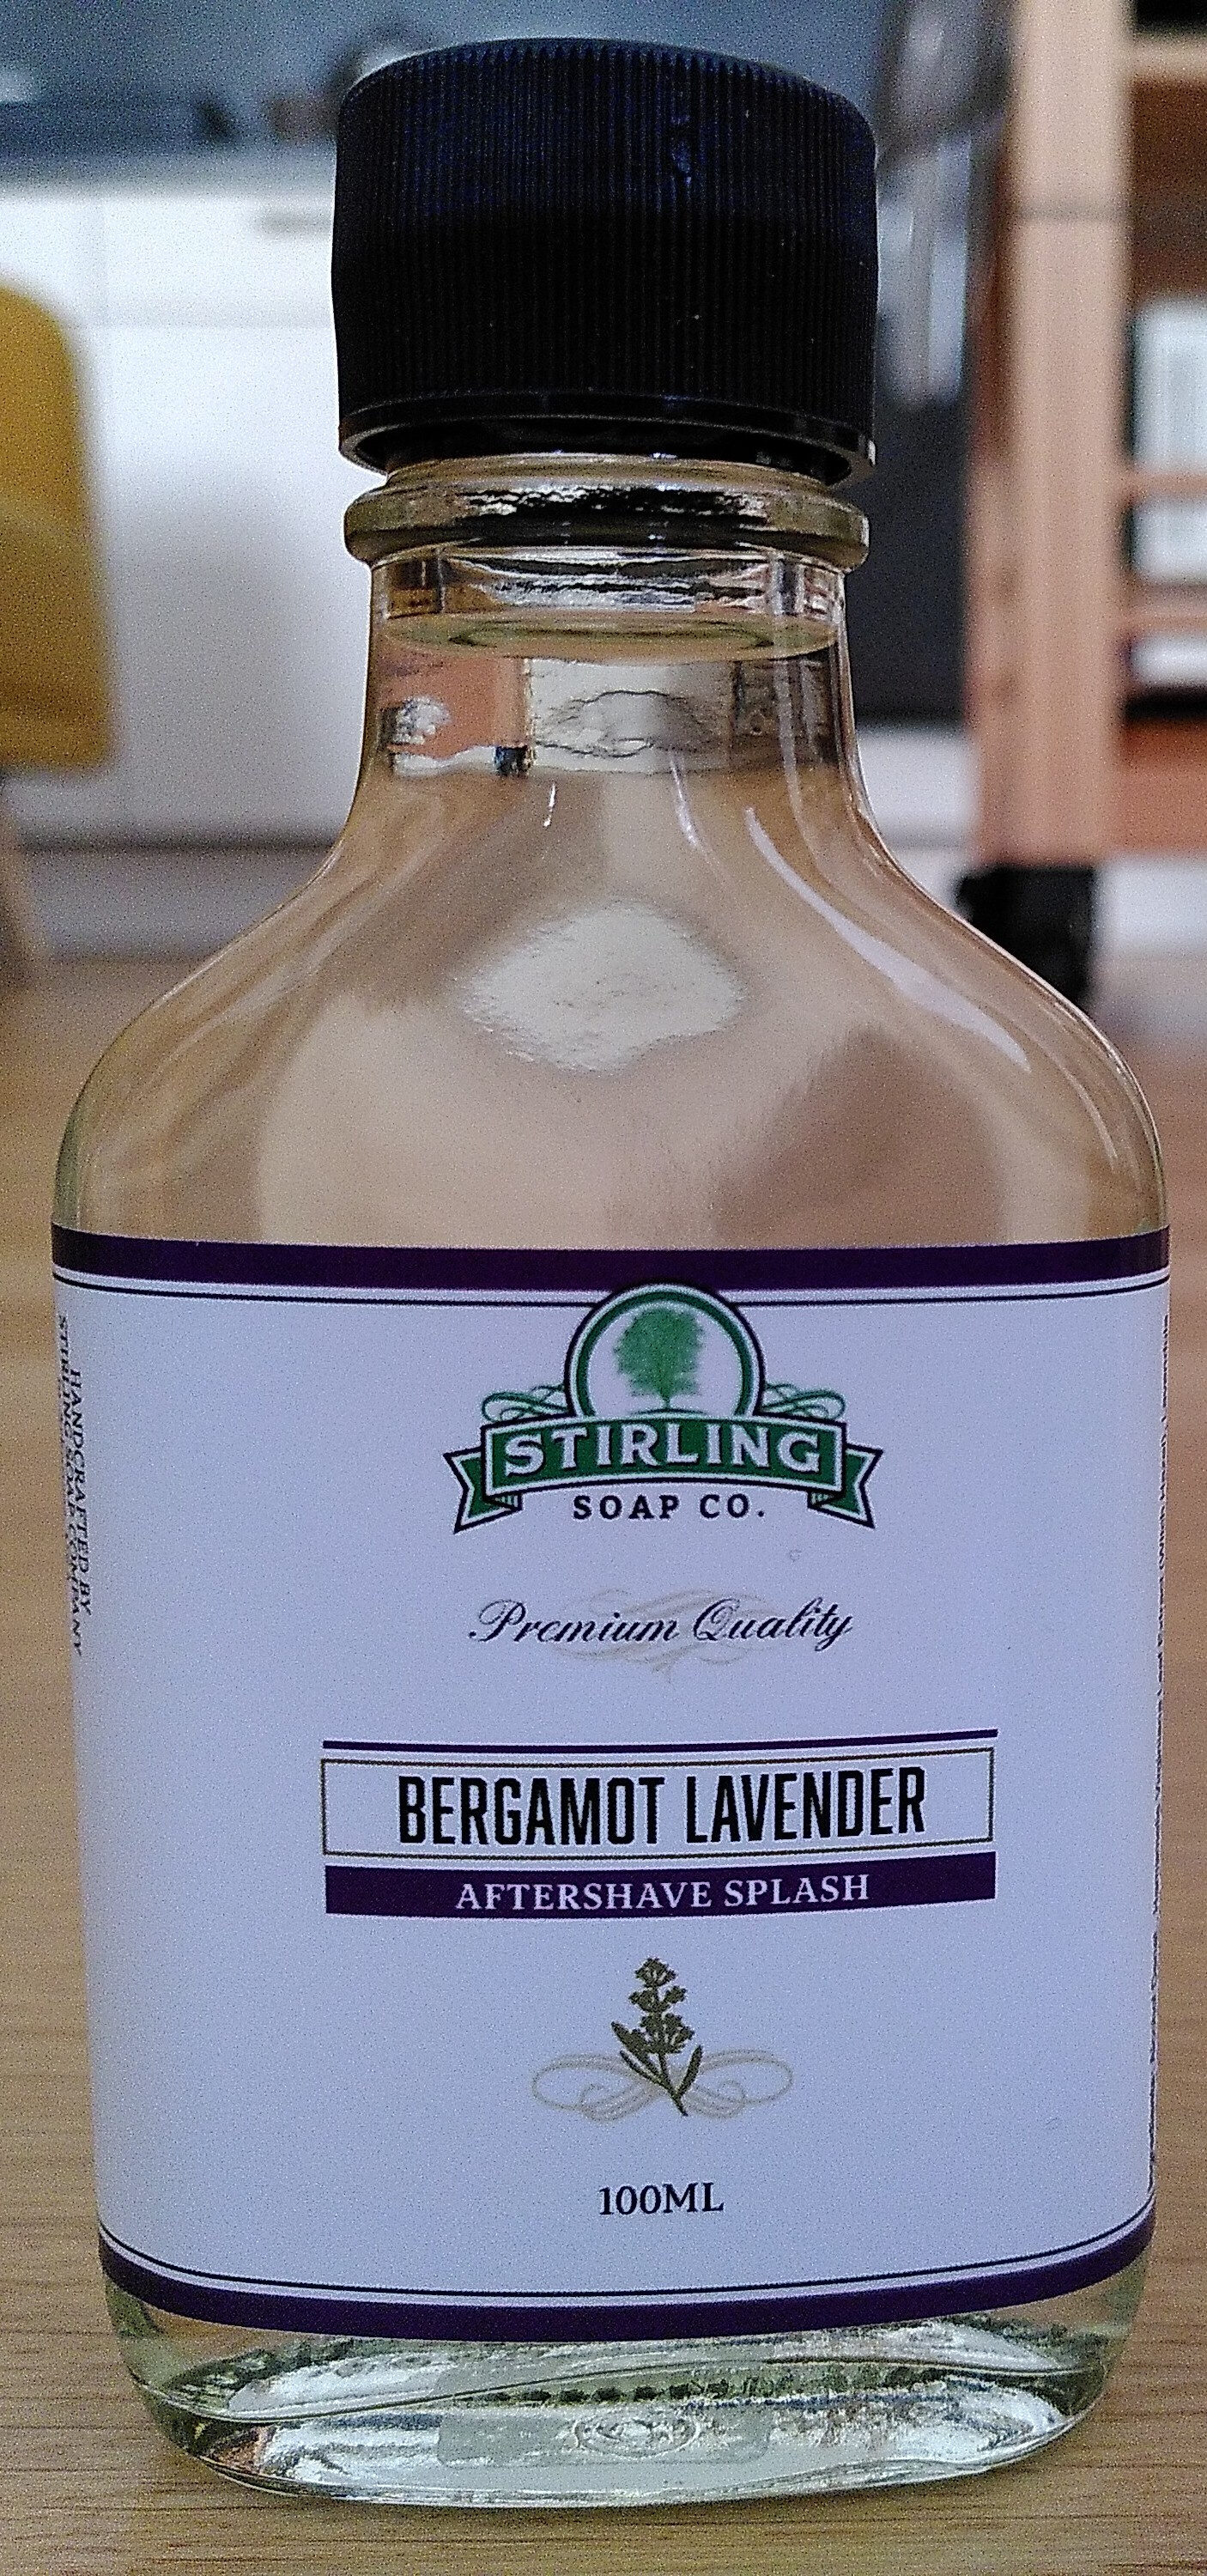 Bergamot Lavender Aftershave Splash - Produkt - en